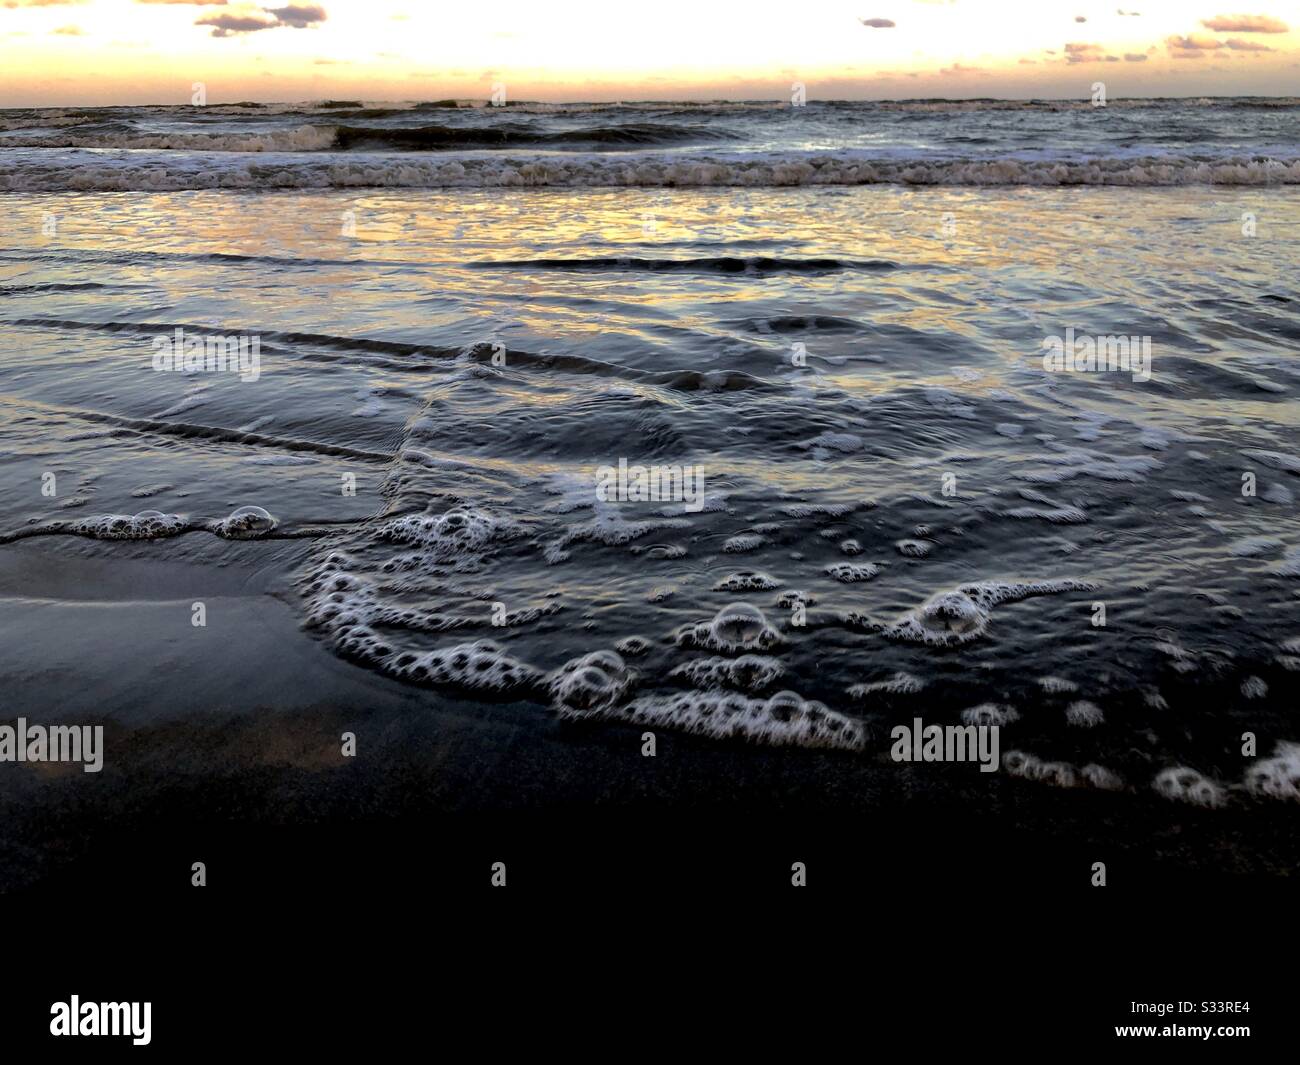 Foto alla Spiaggia: Le Onde del mare Fanno scintille sui nostri ricordi di infanzia • giocando Le Bolle al Beachside Venerdì 19:05P.M. Malesia Foto Stock